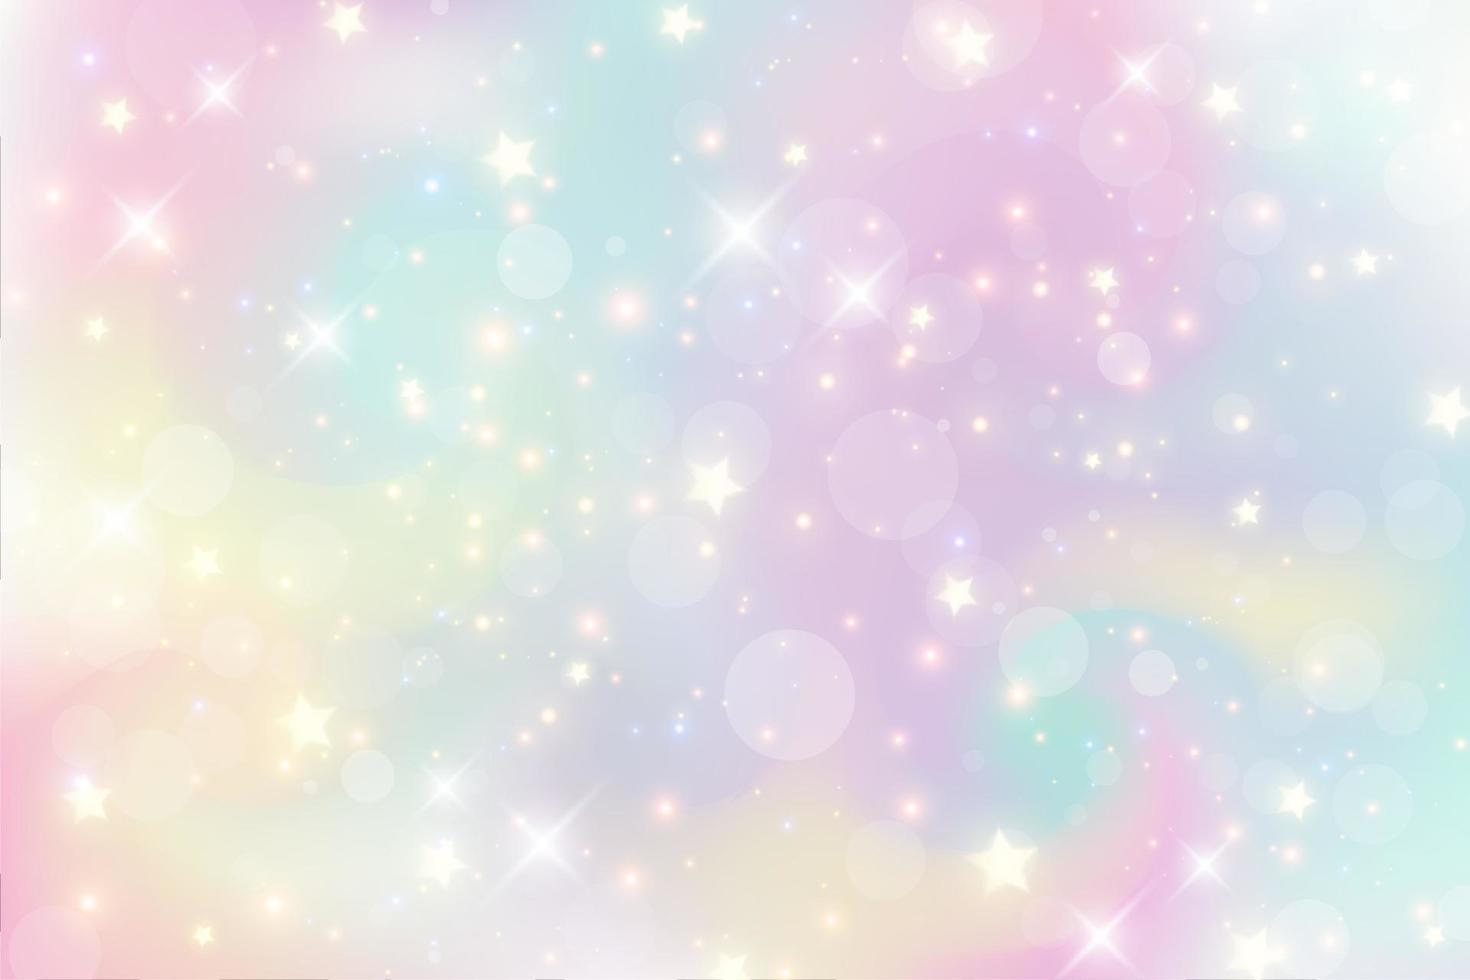 illustrazione dell'acquerello di fantasia con il cielo pastello dell'arcobaleno con le stelle. sfondo cosmico astratto di unicorno. illustrazione vettoriale di ragazza del fumetto.